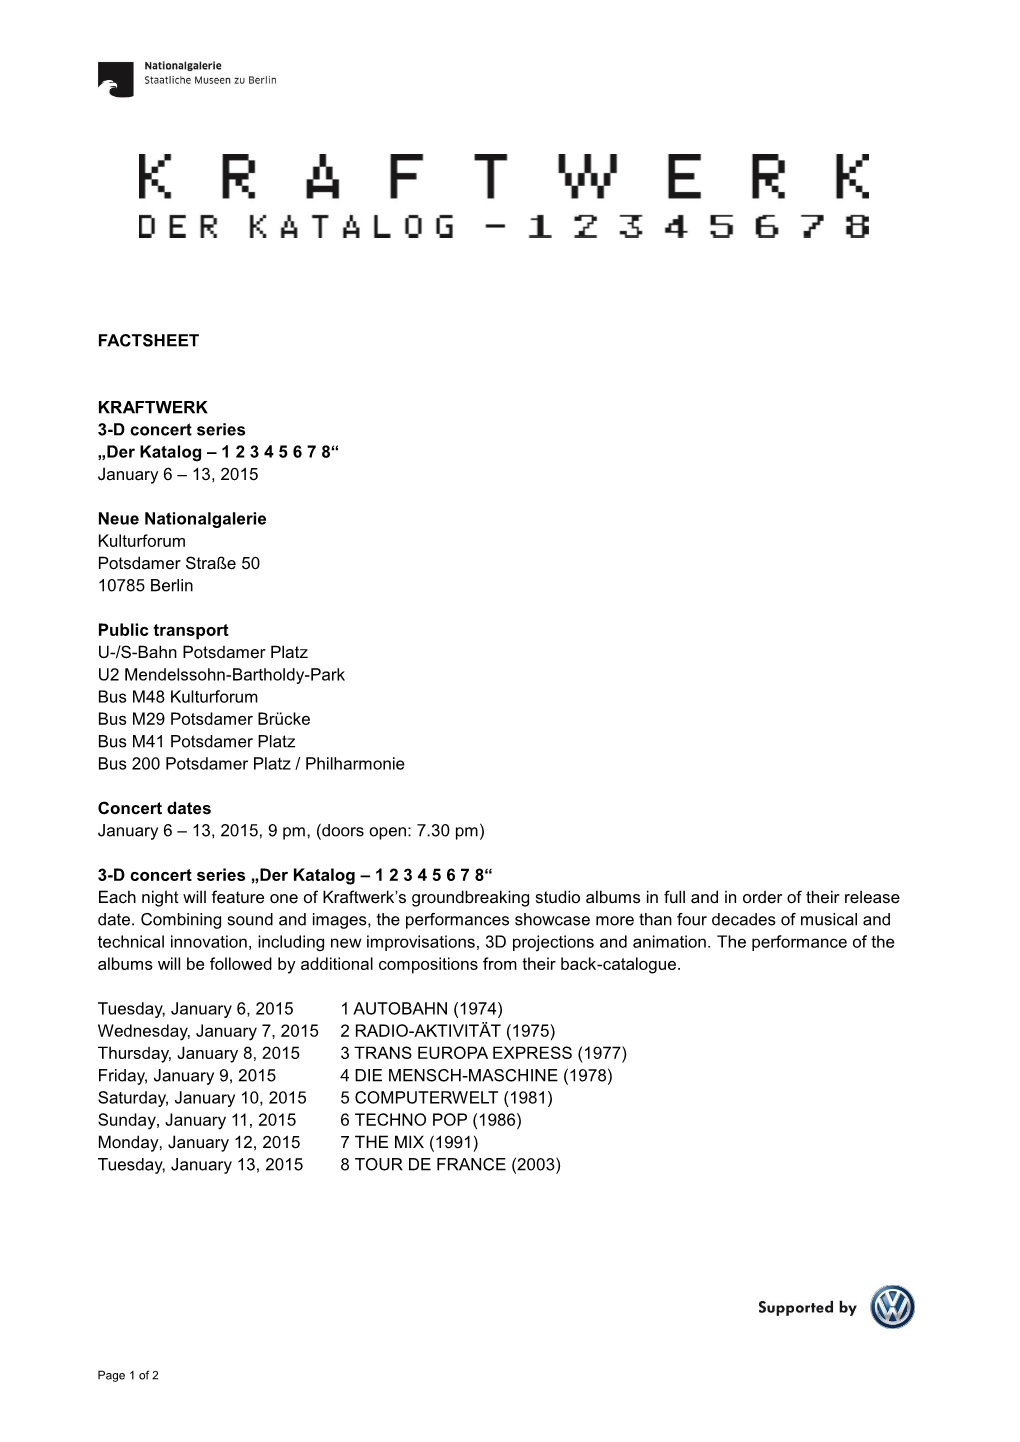 FACTSHEET KRAFTWERK 3-D Concert Series